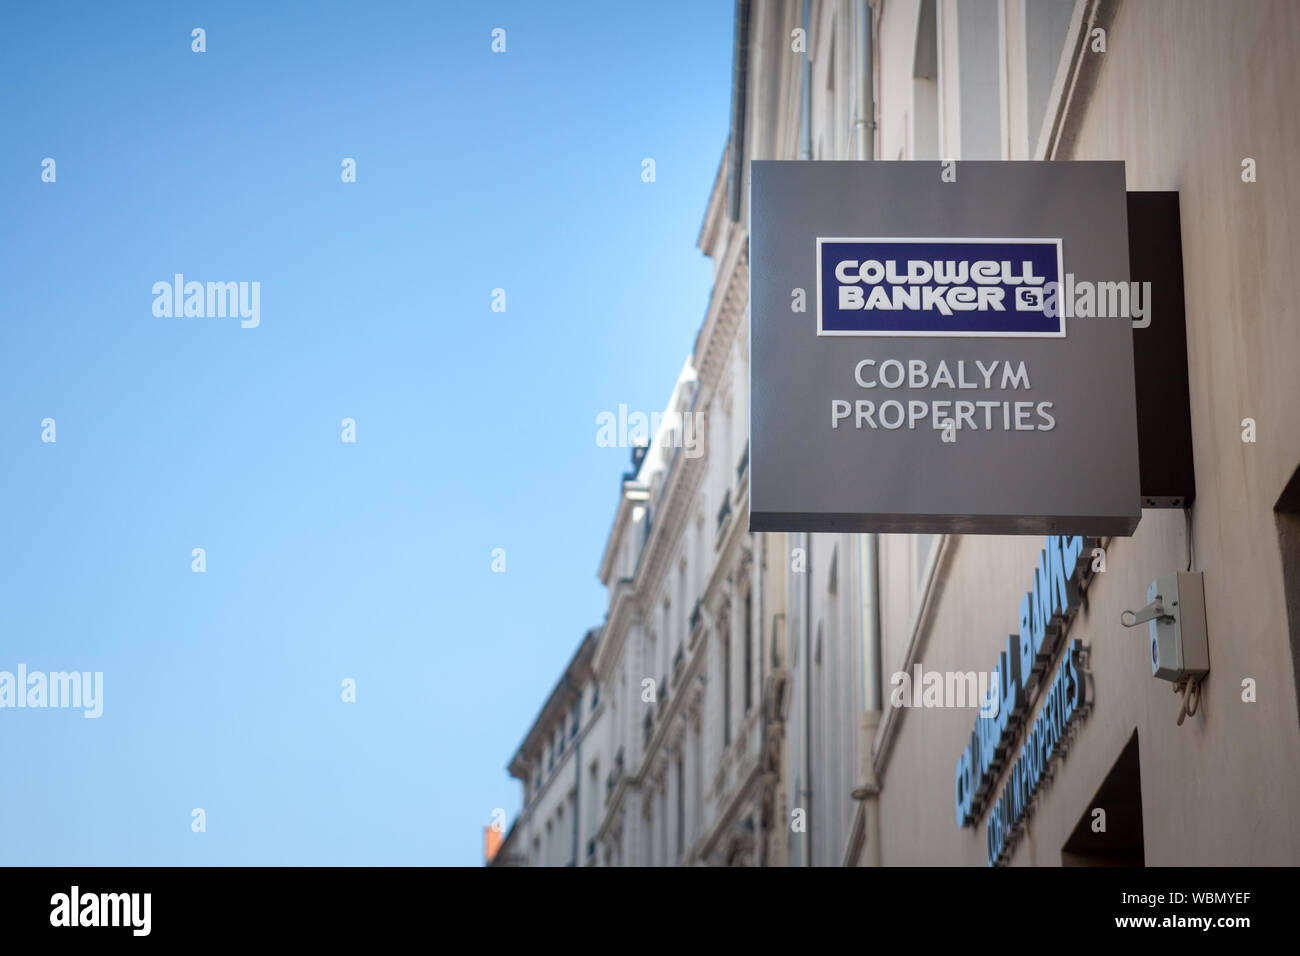 LYON, FRANCE - 19 juillet 2019 : Coldwell Banker logo en face de leur agent immobilier pour Lyon. Coldwell Banker est une franchise de l'immobilier américain Banque D'Images